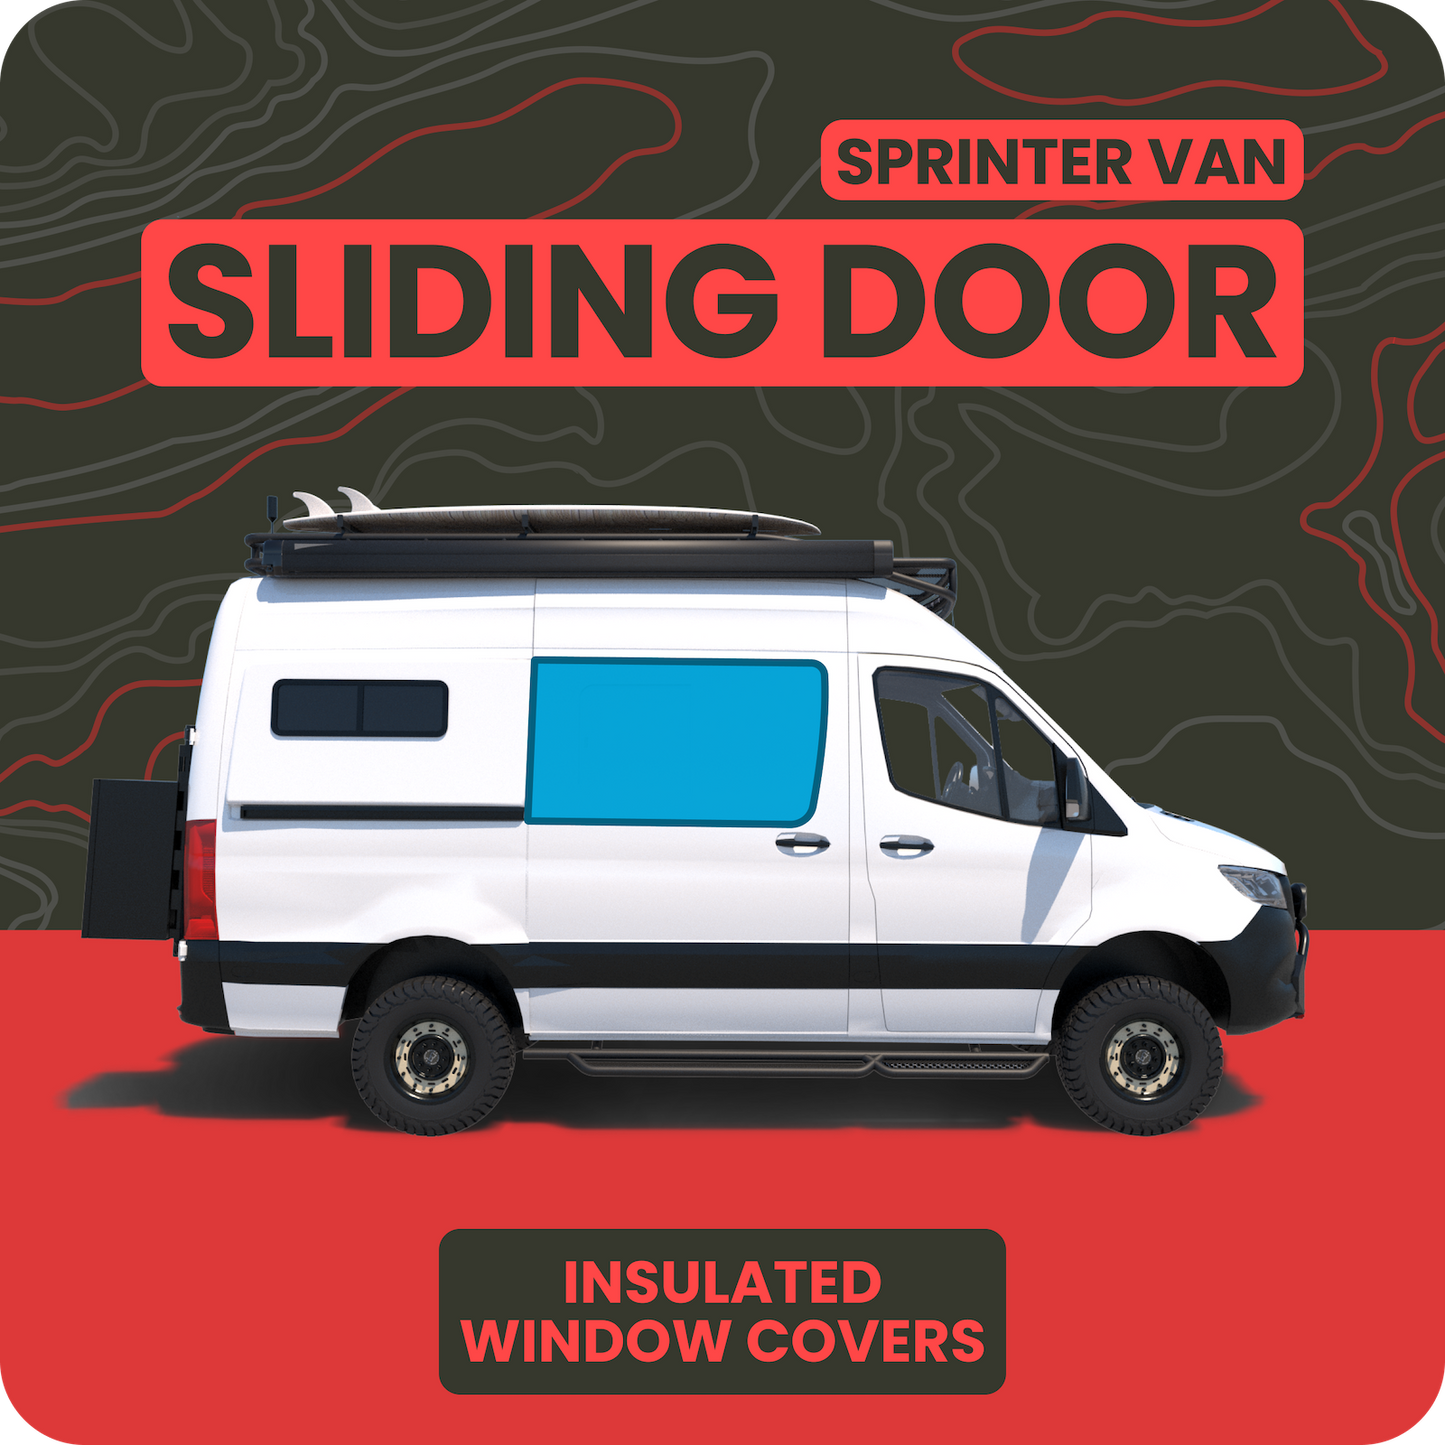 Window Covers - Slider Door